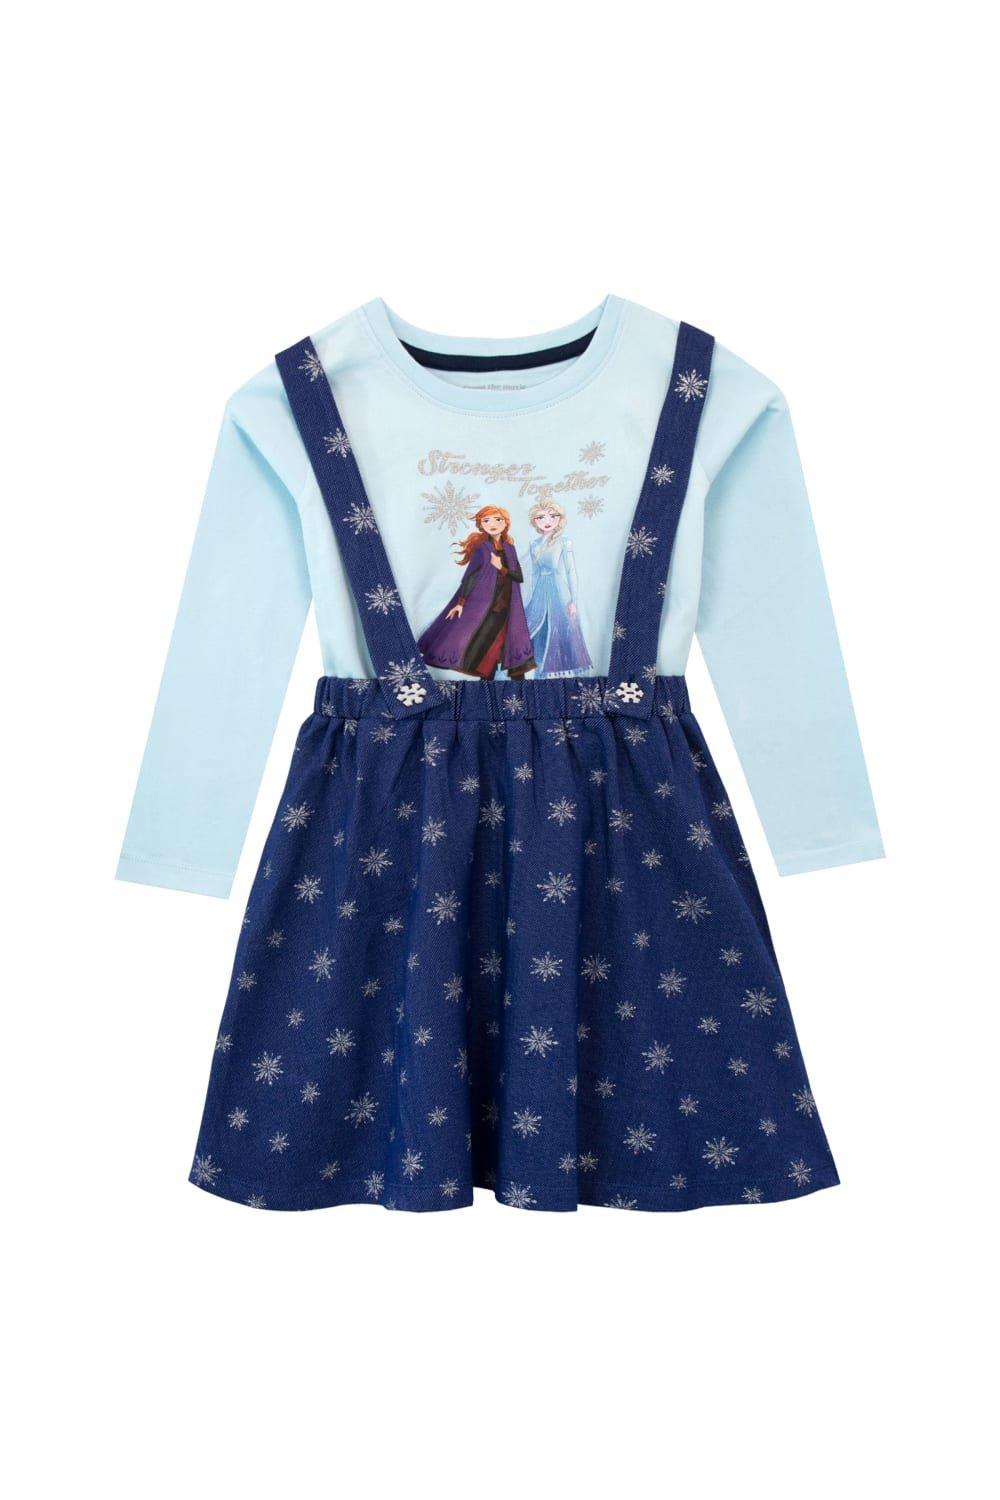 Комплект из футболки и сарафана Frozen Disney, синий